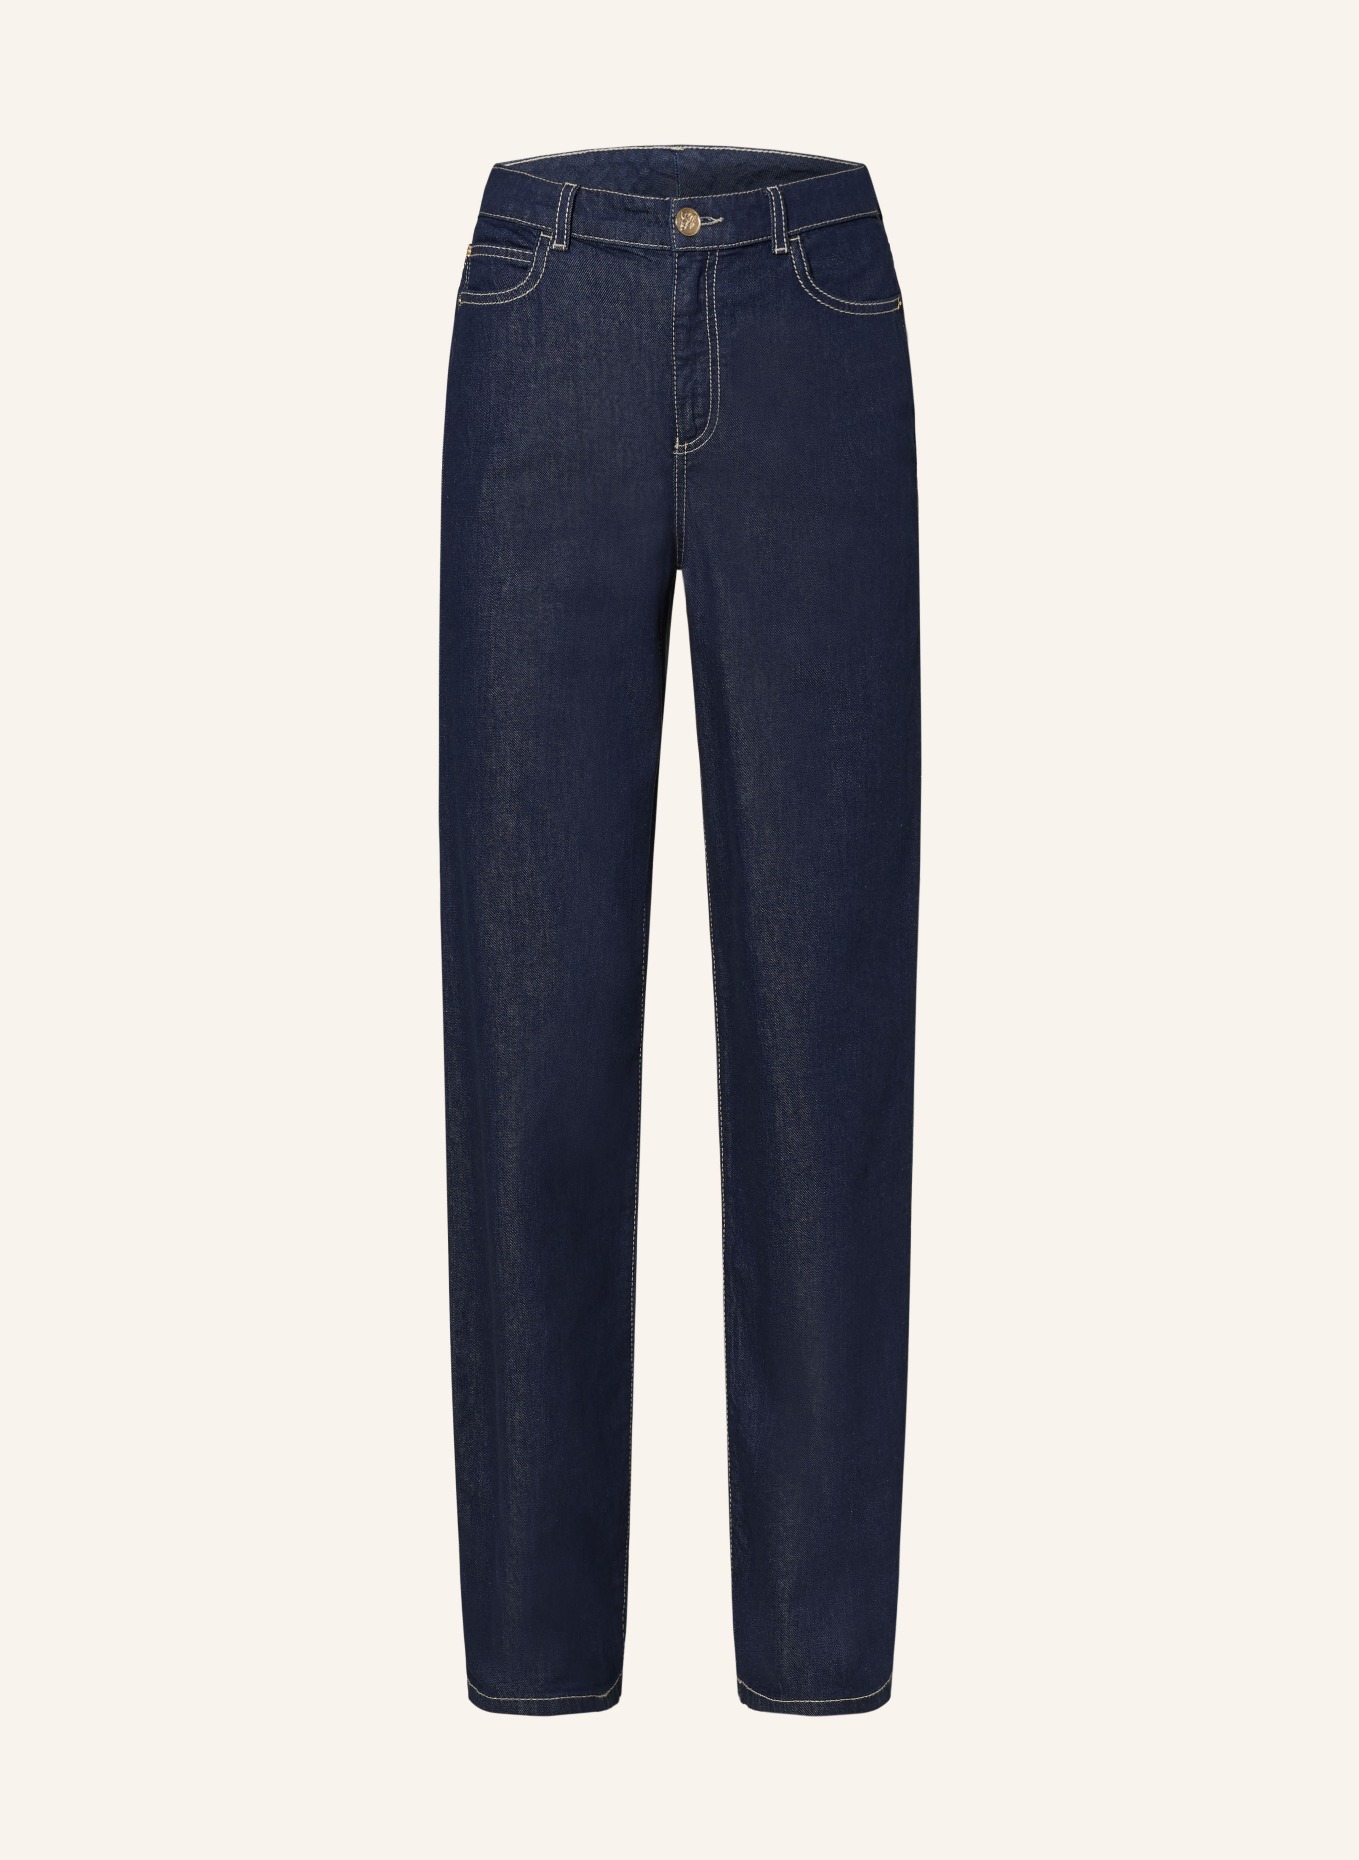 EMPORIO ARMANI Straight jeans, Color: 0941 Denim (Image 1)